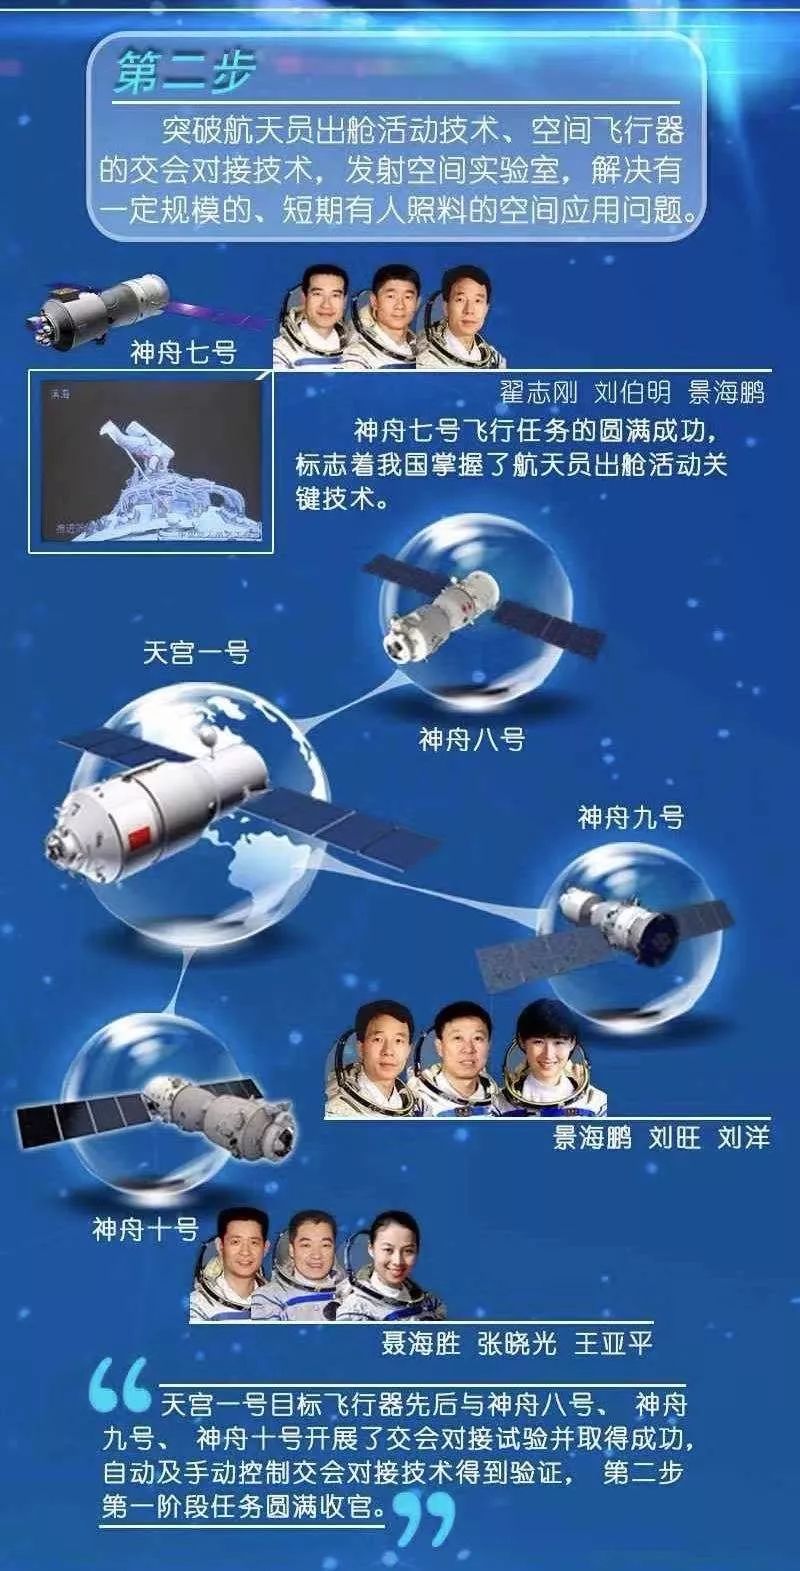 2022世界杯买球入口:杨立伟、唐一华、张伯南等被聘为中国载人航天工程副总设计师